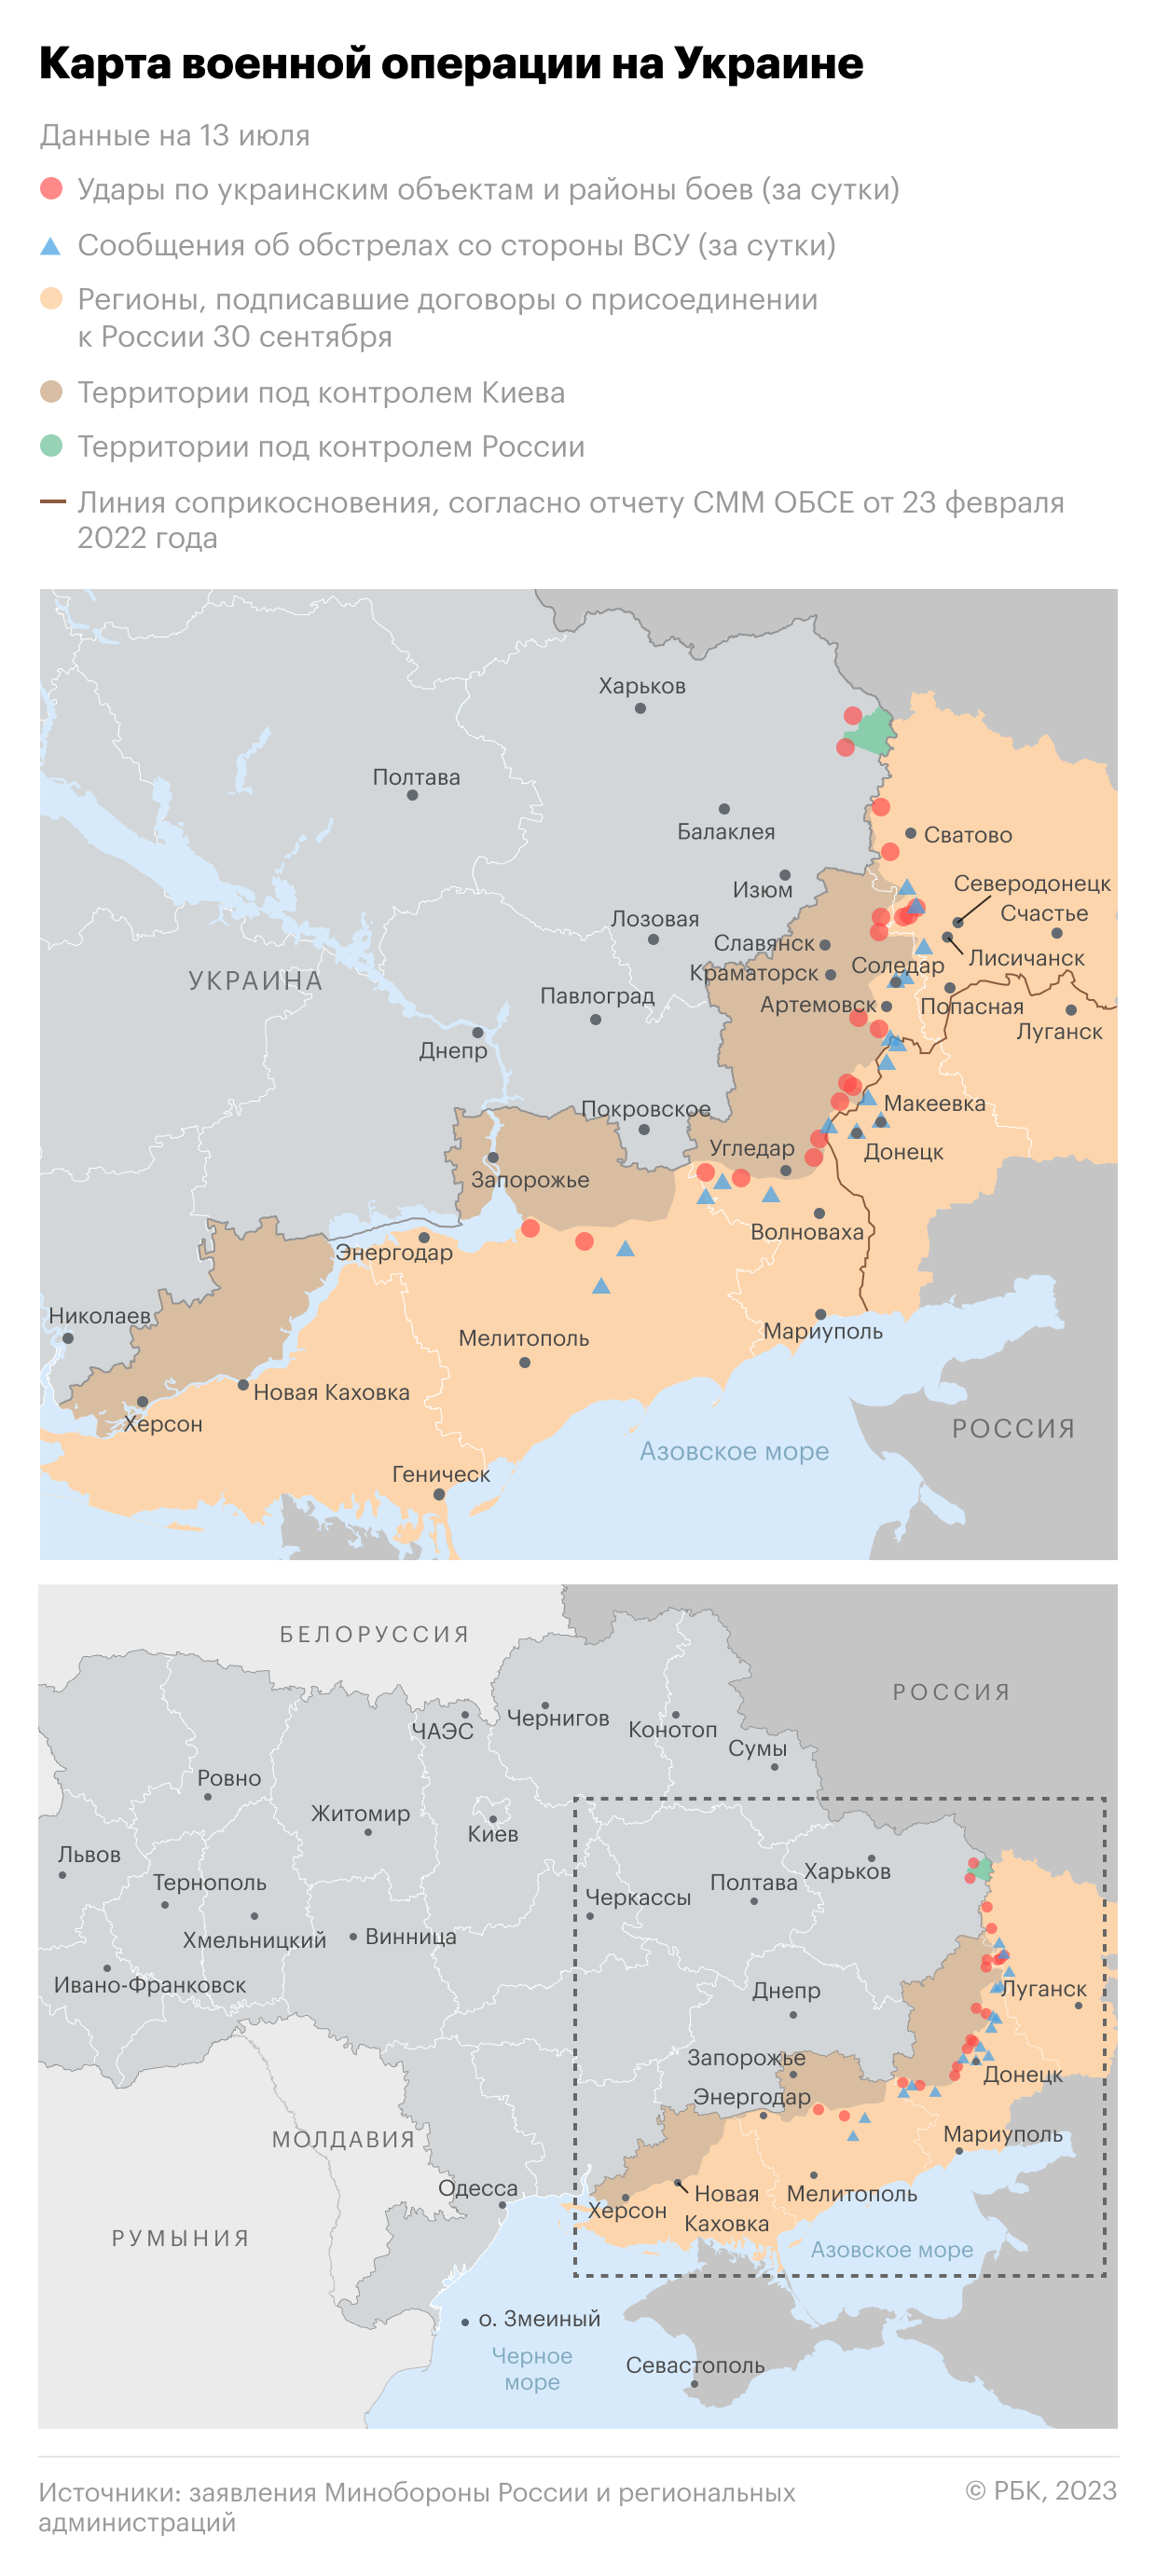 Военная операция на Украине. Карта на 13 июля"/>













